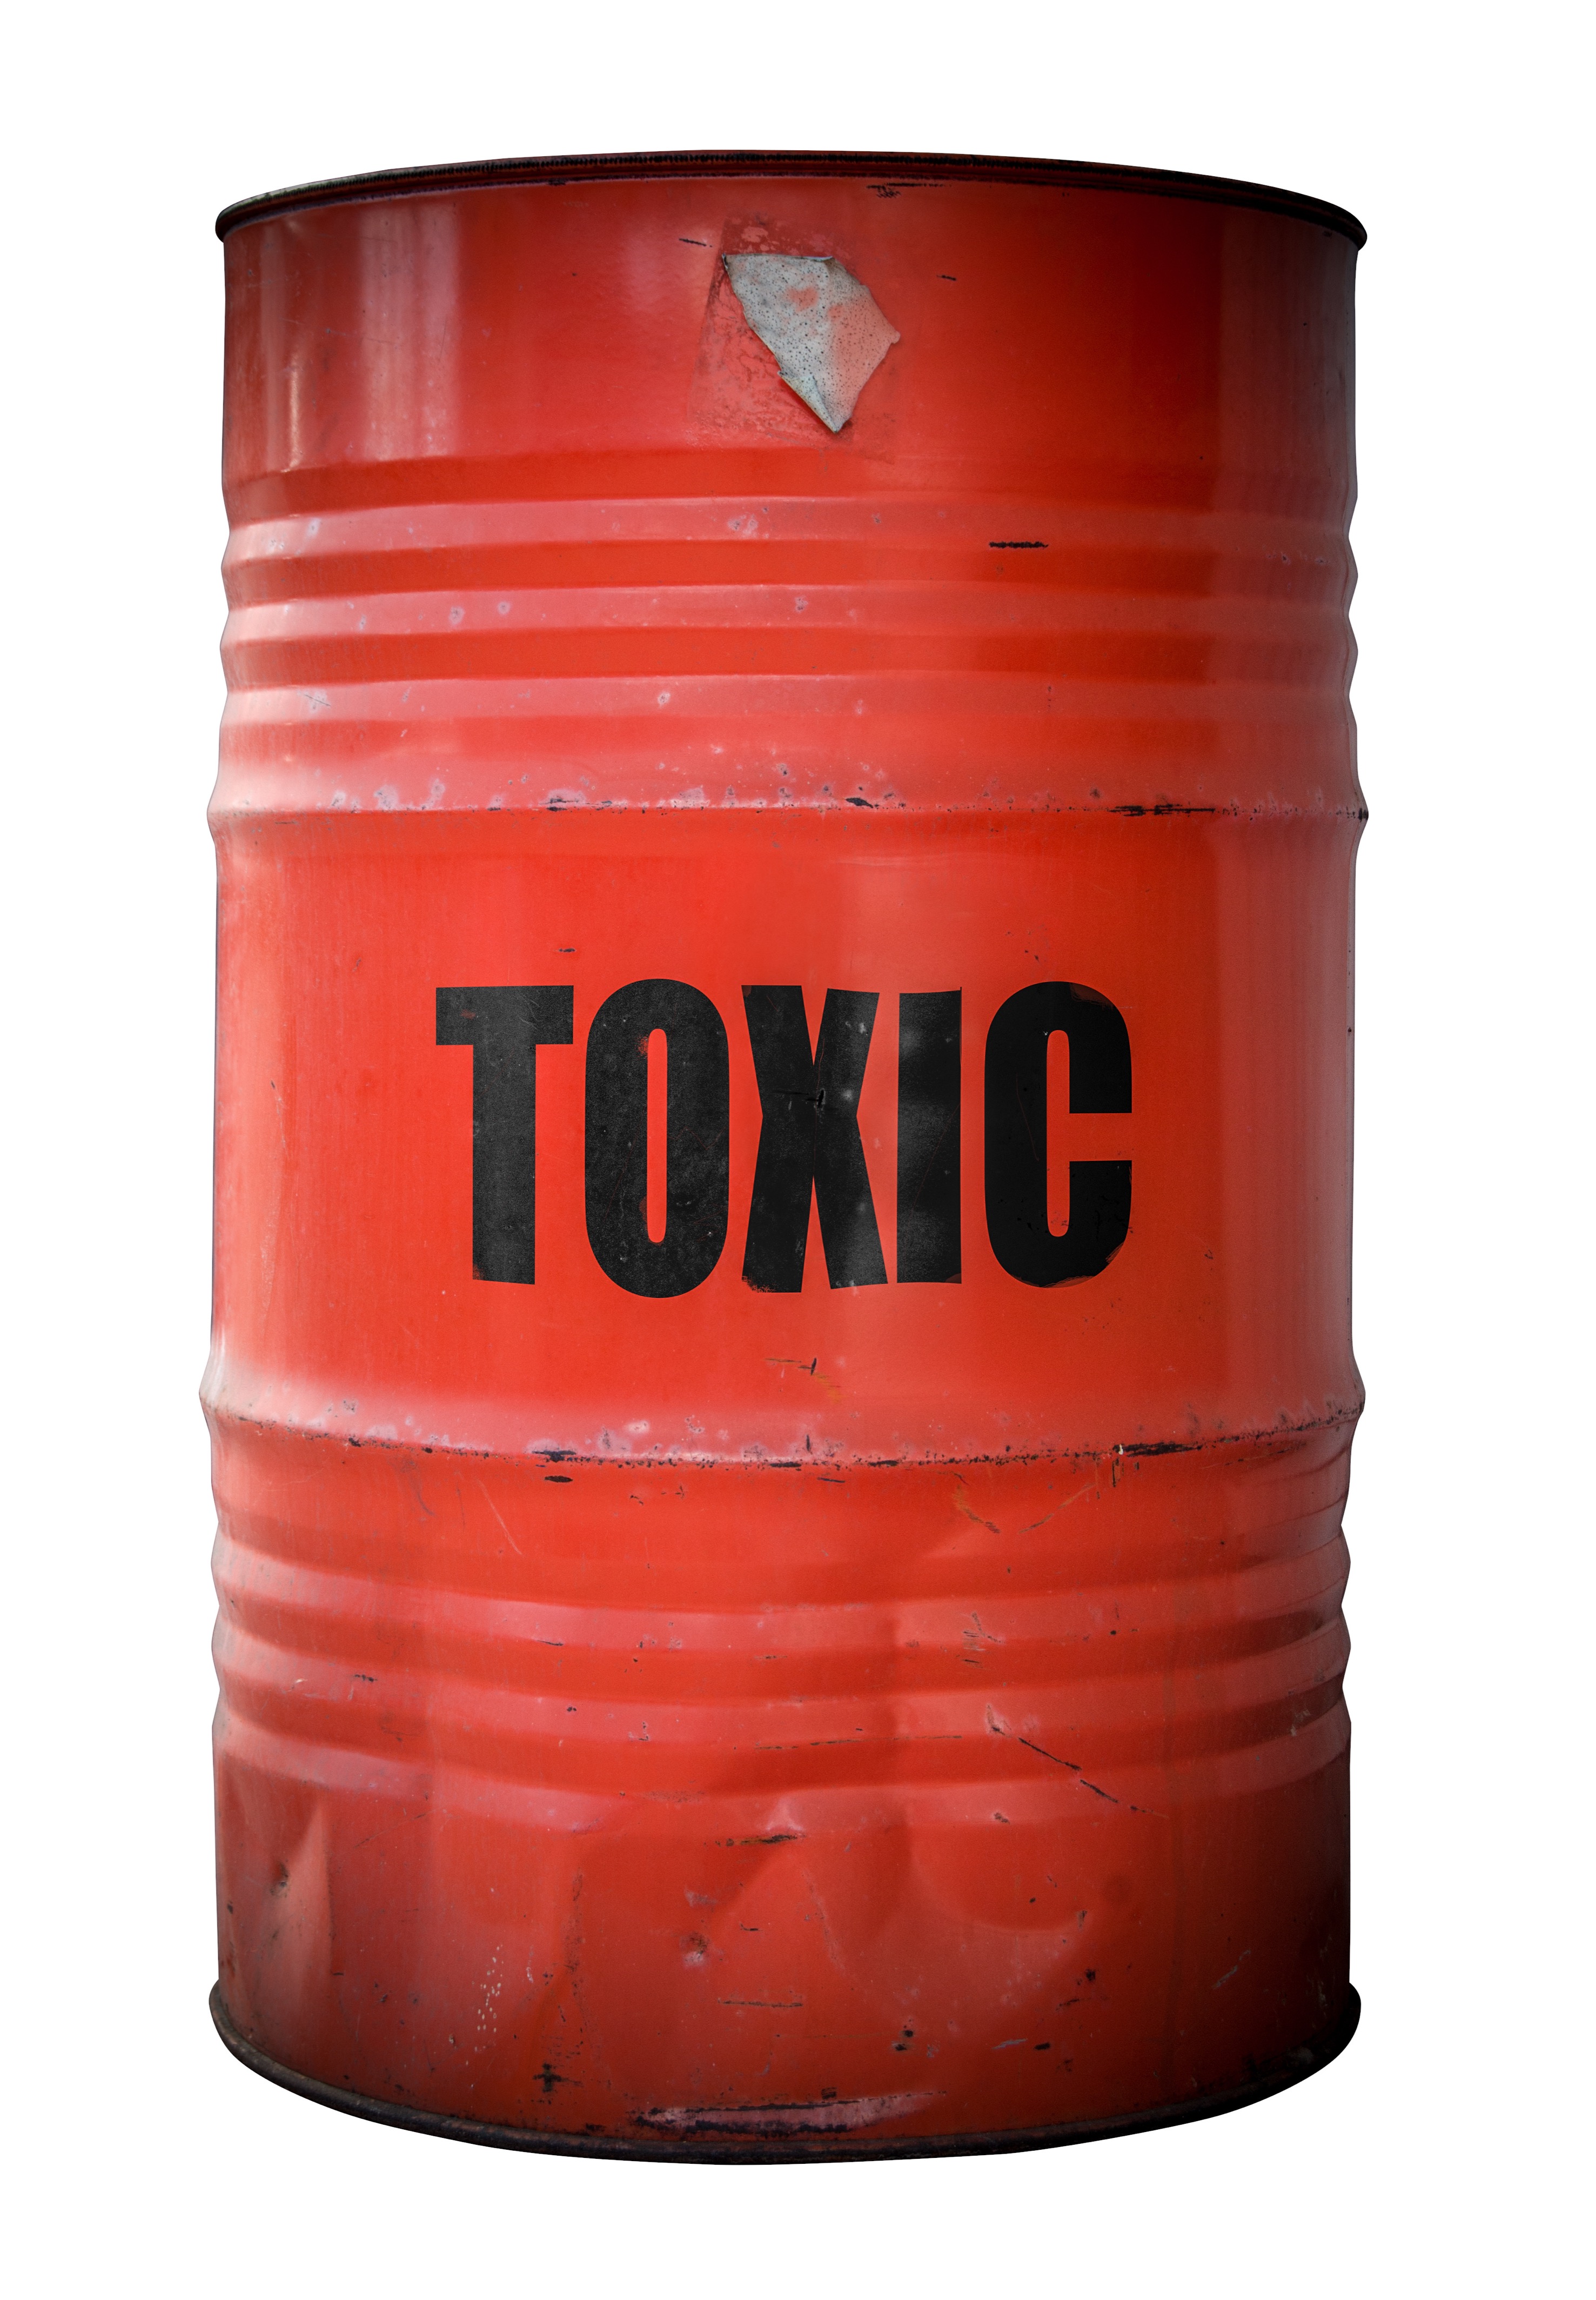 Toxic Symbol Png - Free Logo Image